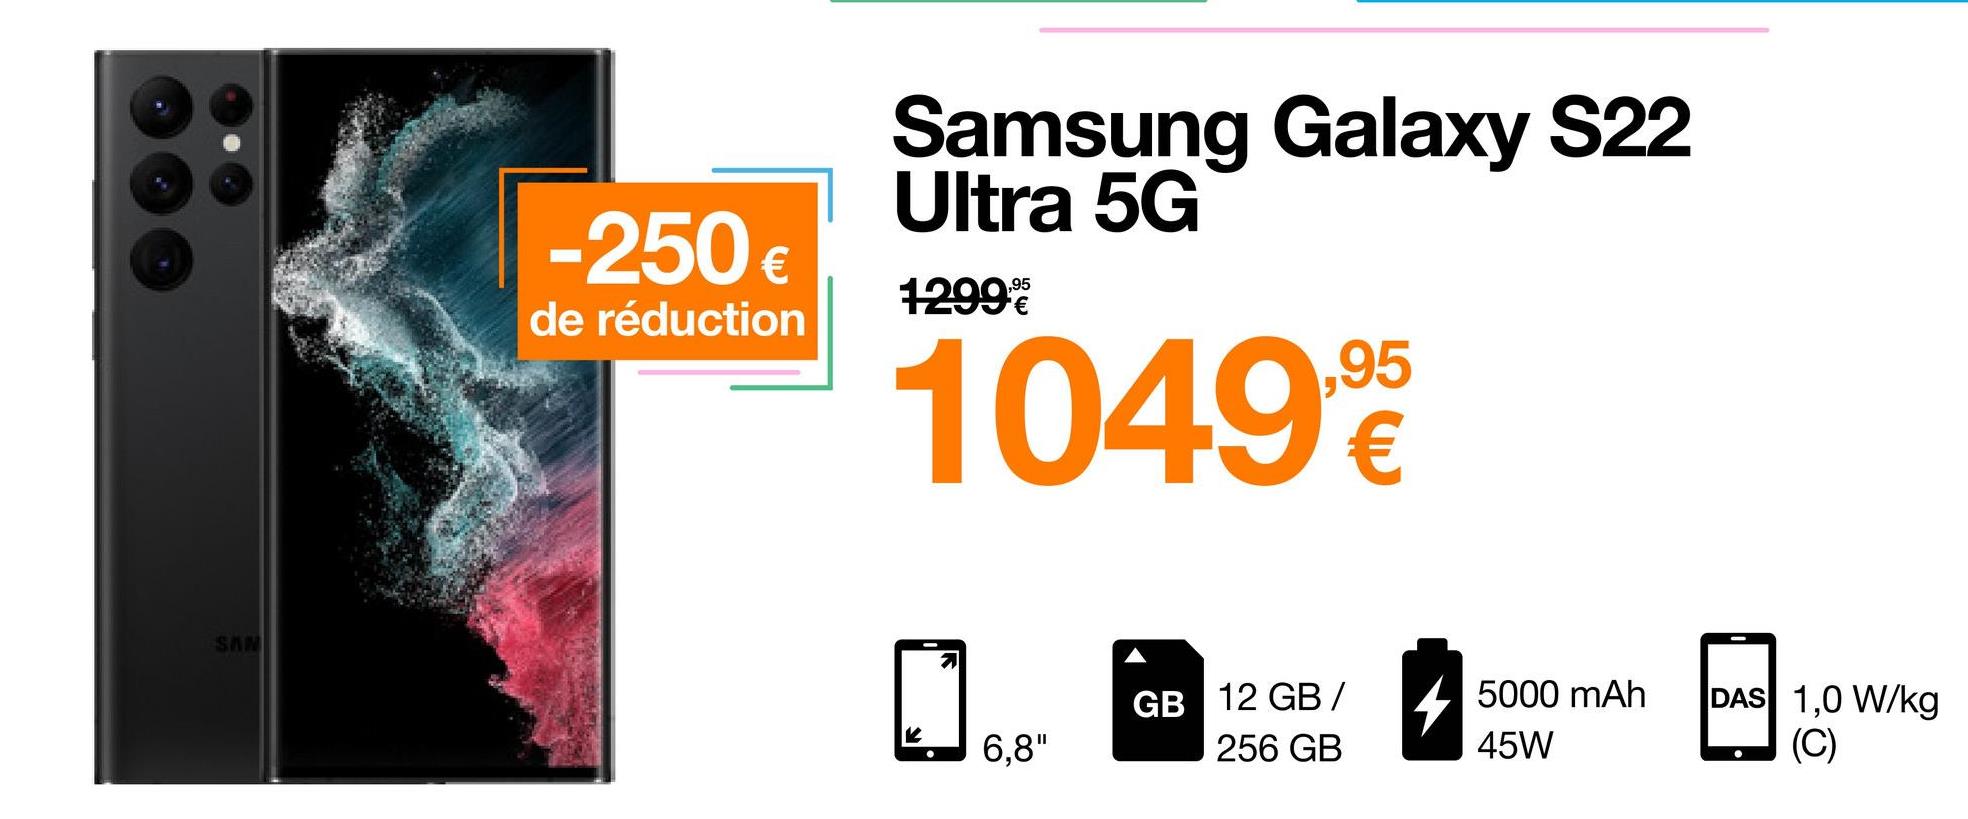 SAN
-250 €
de réduction
Samsung Galaxy S22
Ultra 5G
1299€
10499
6,8"
GB 12 GB/ 5000 mAh
256 GB
45W
DAS 1,0 W/kg
(C)